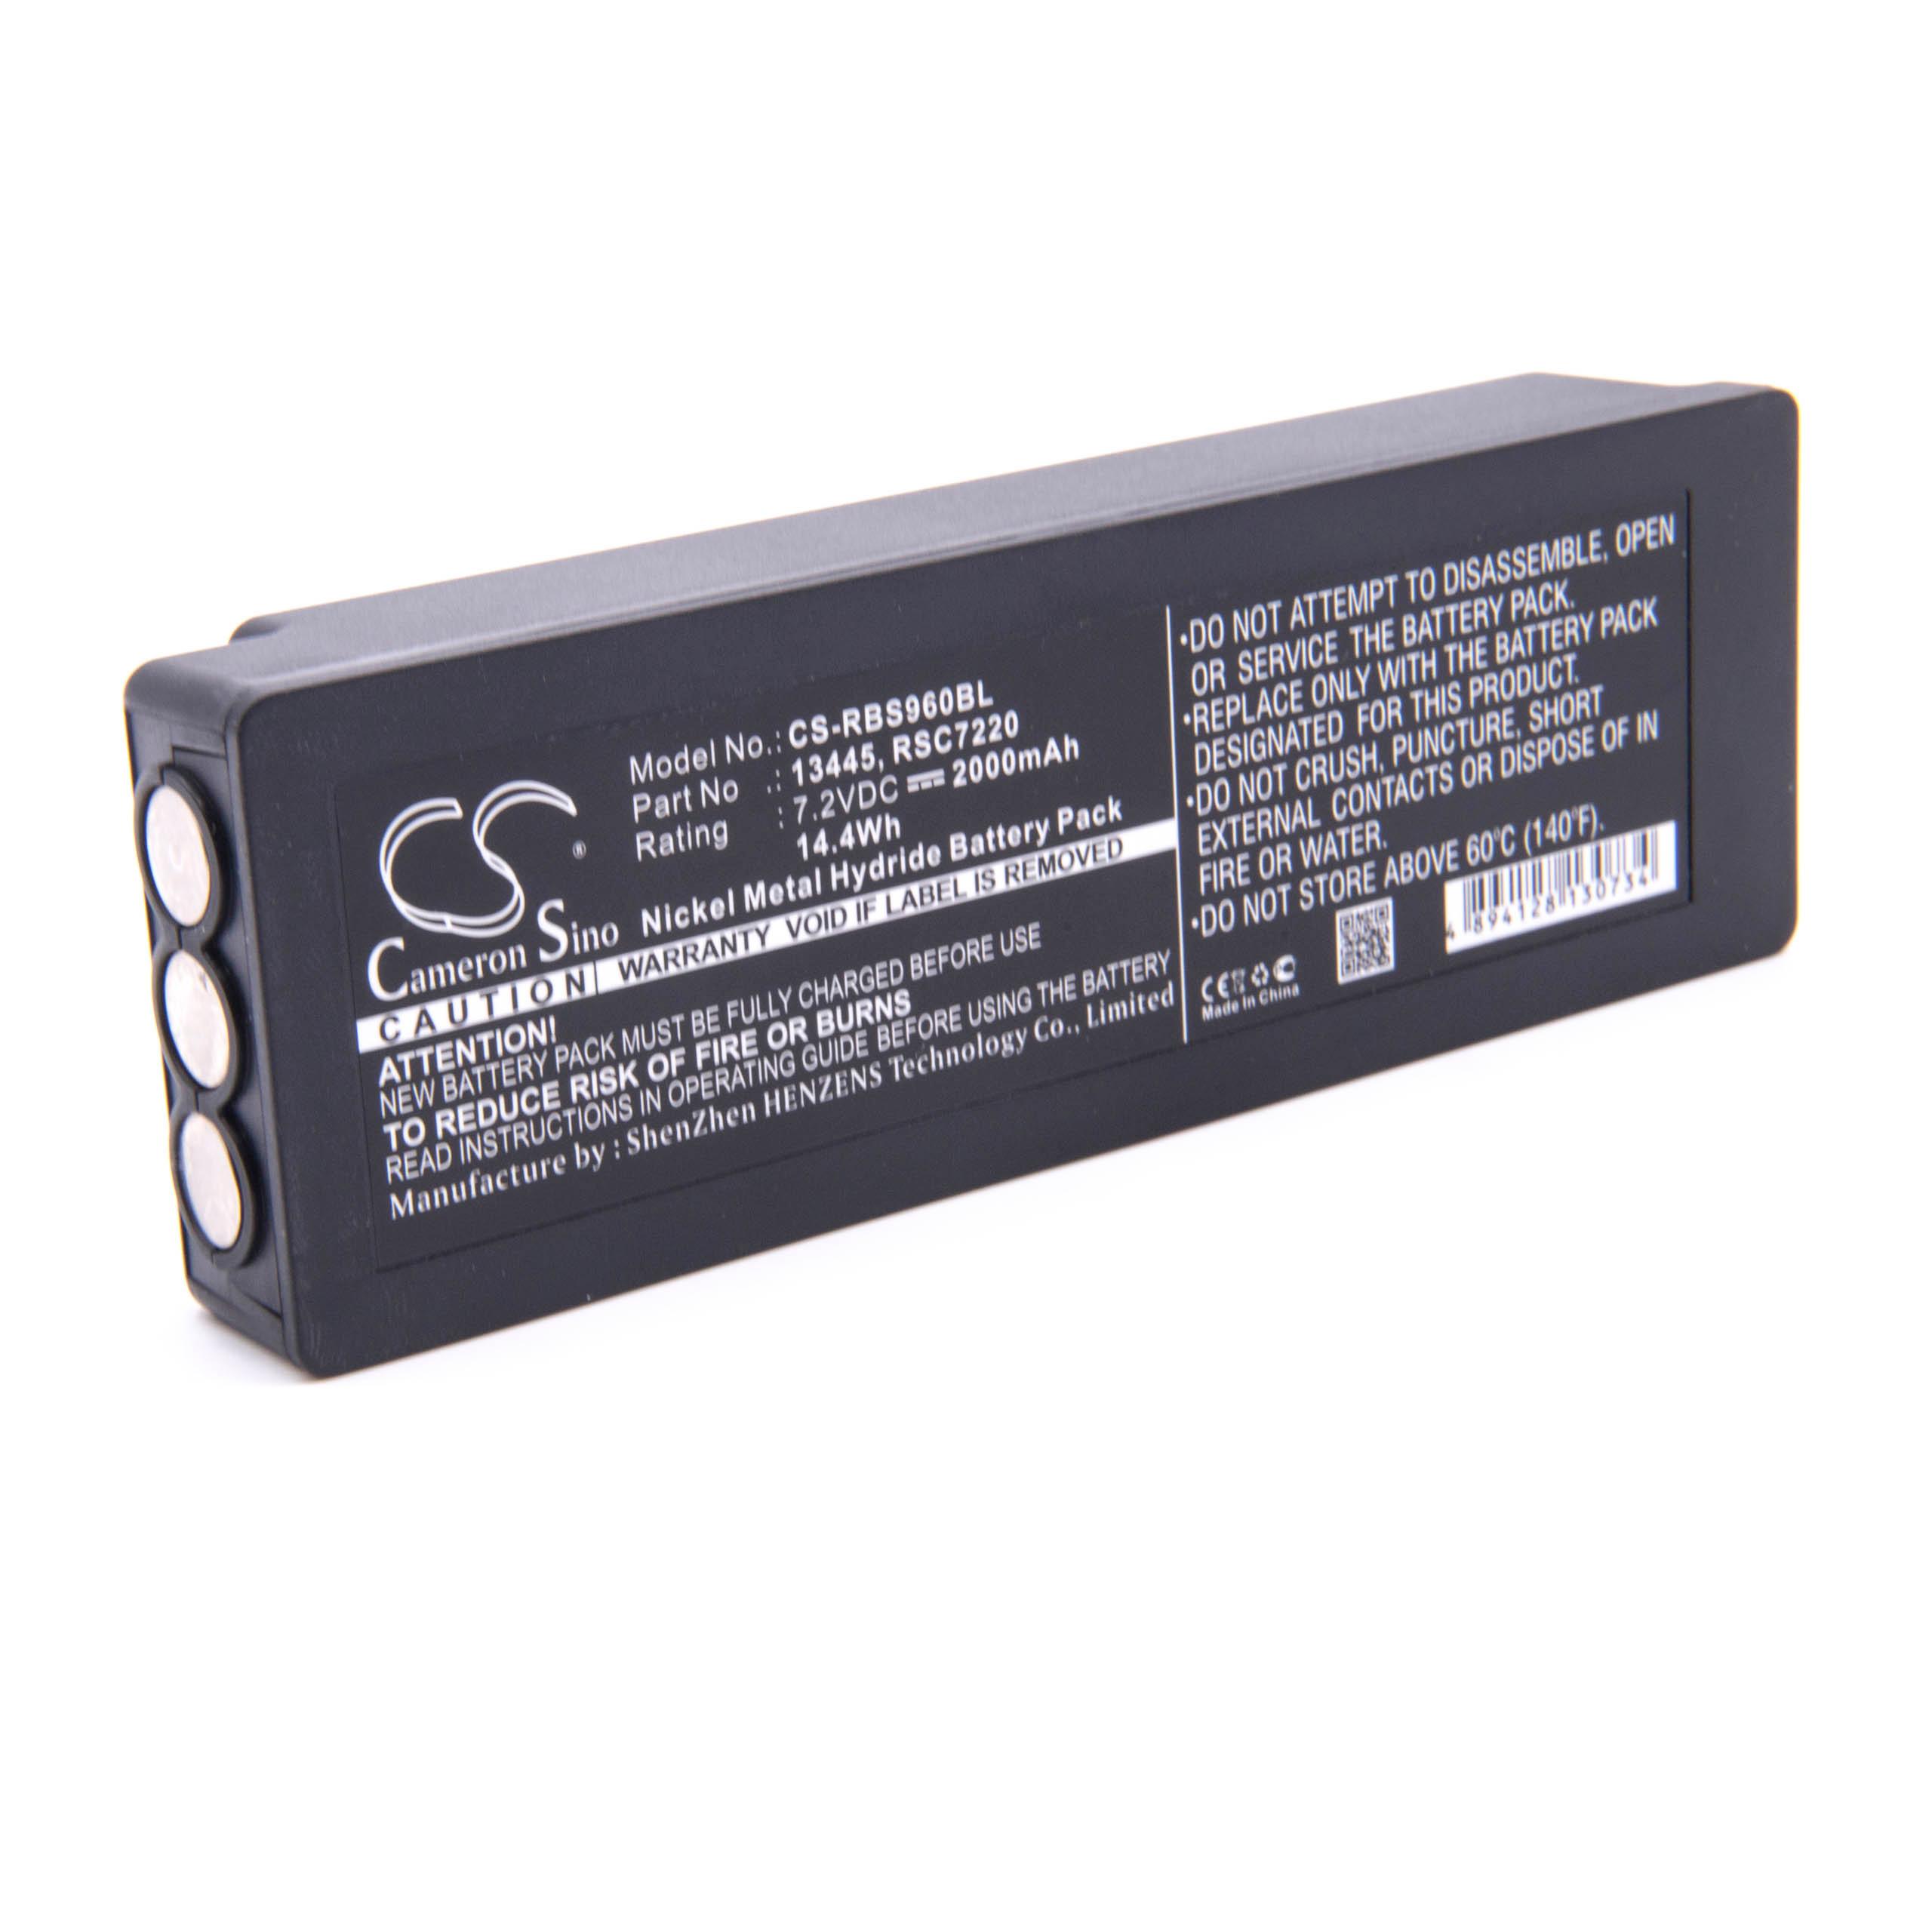 Batterie remplace Palfinger Scanreco 1026, 16131, 13445 pour télécomande industrielle - 2000mAh 7,2V NiMH